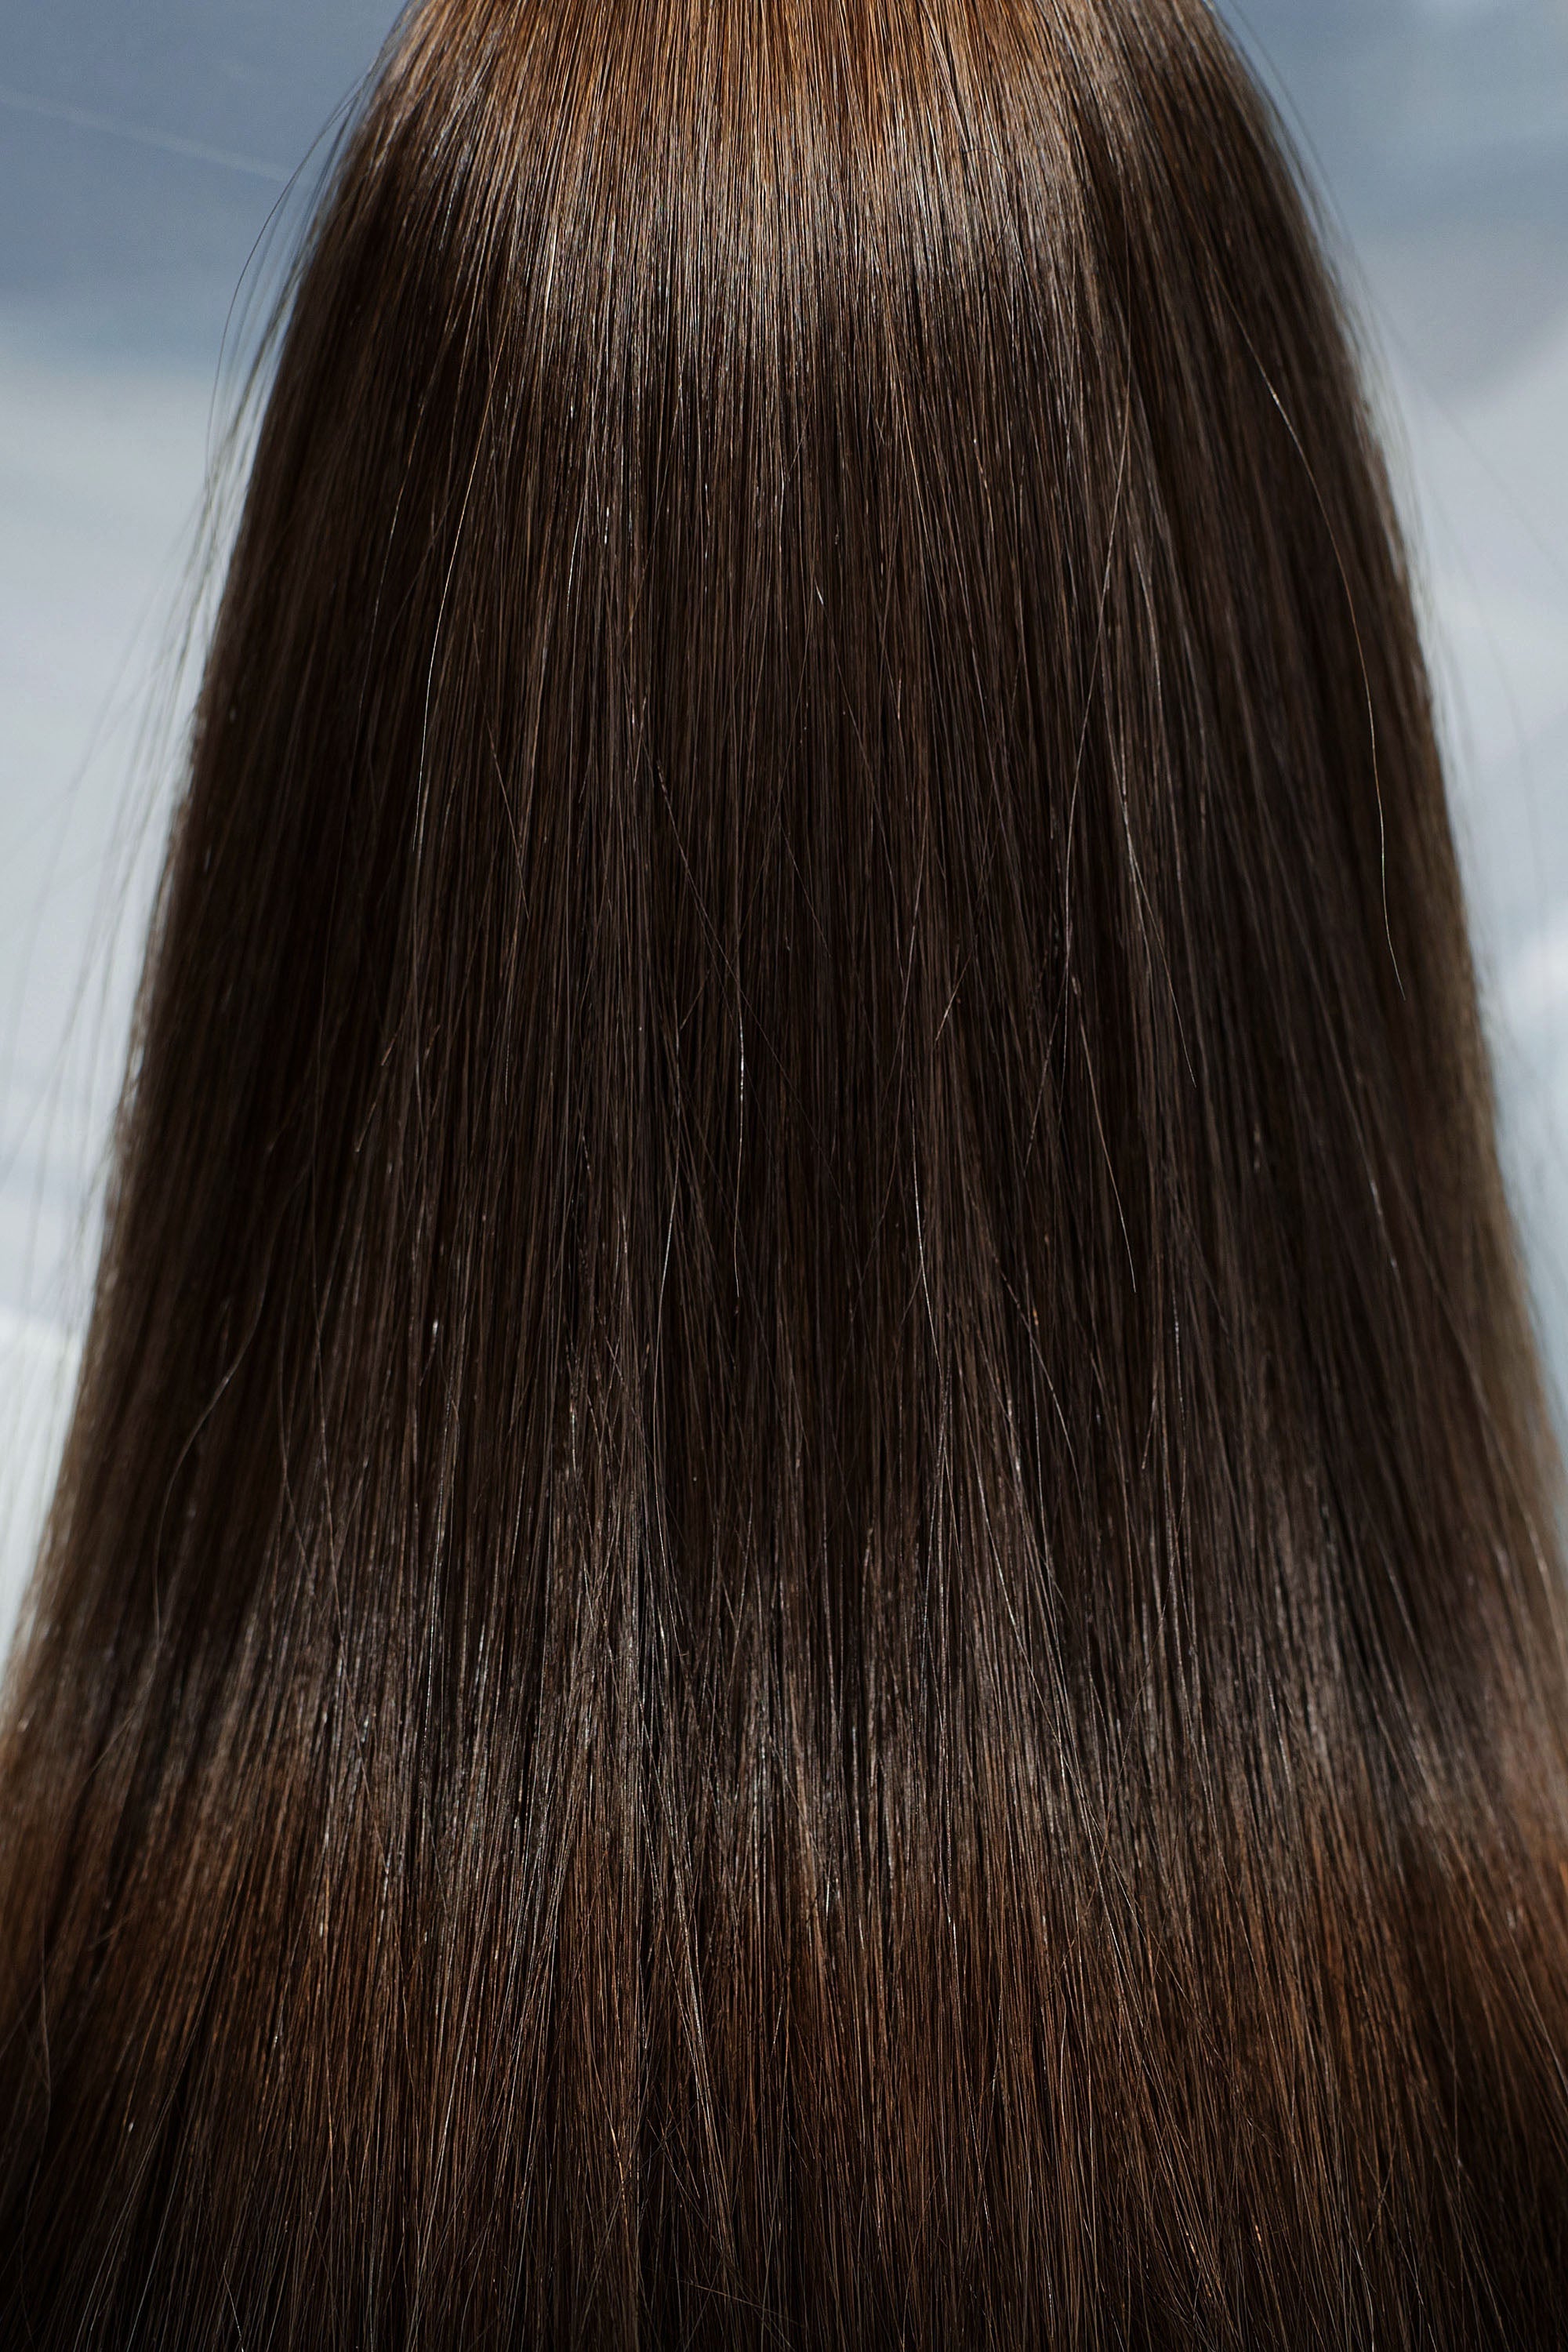 Behair professional Bulk hair "Premium" 28" (70cm) Natural Straight Light Brown #4 - 25g hair extensions